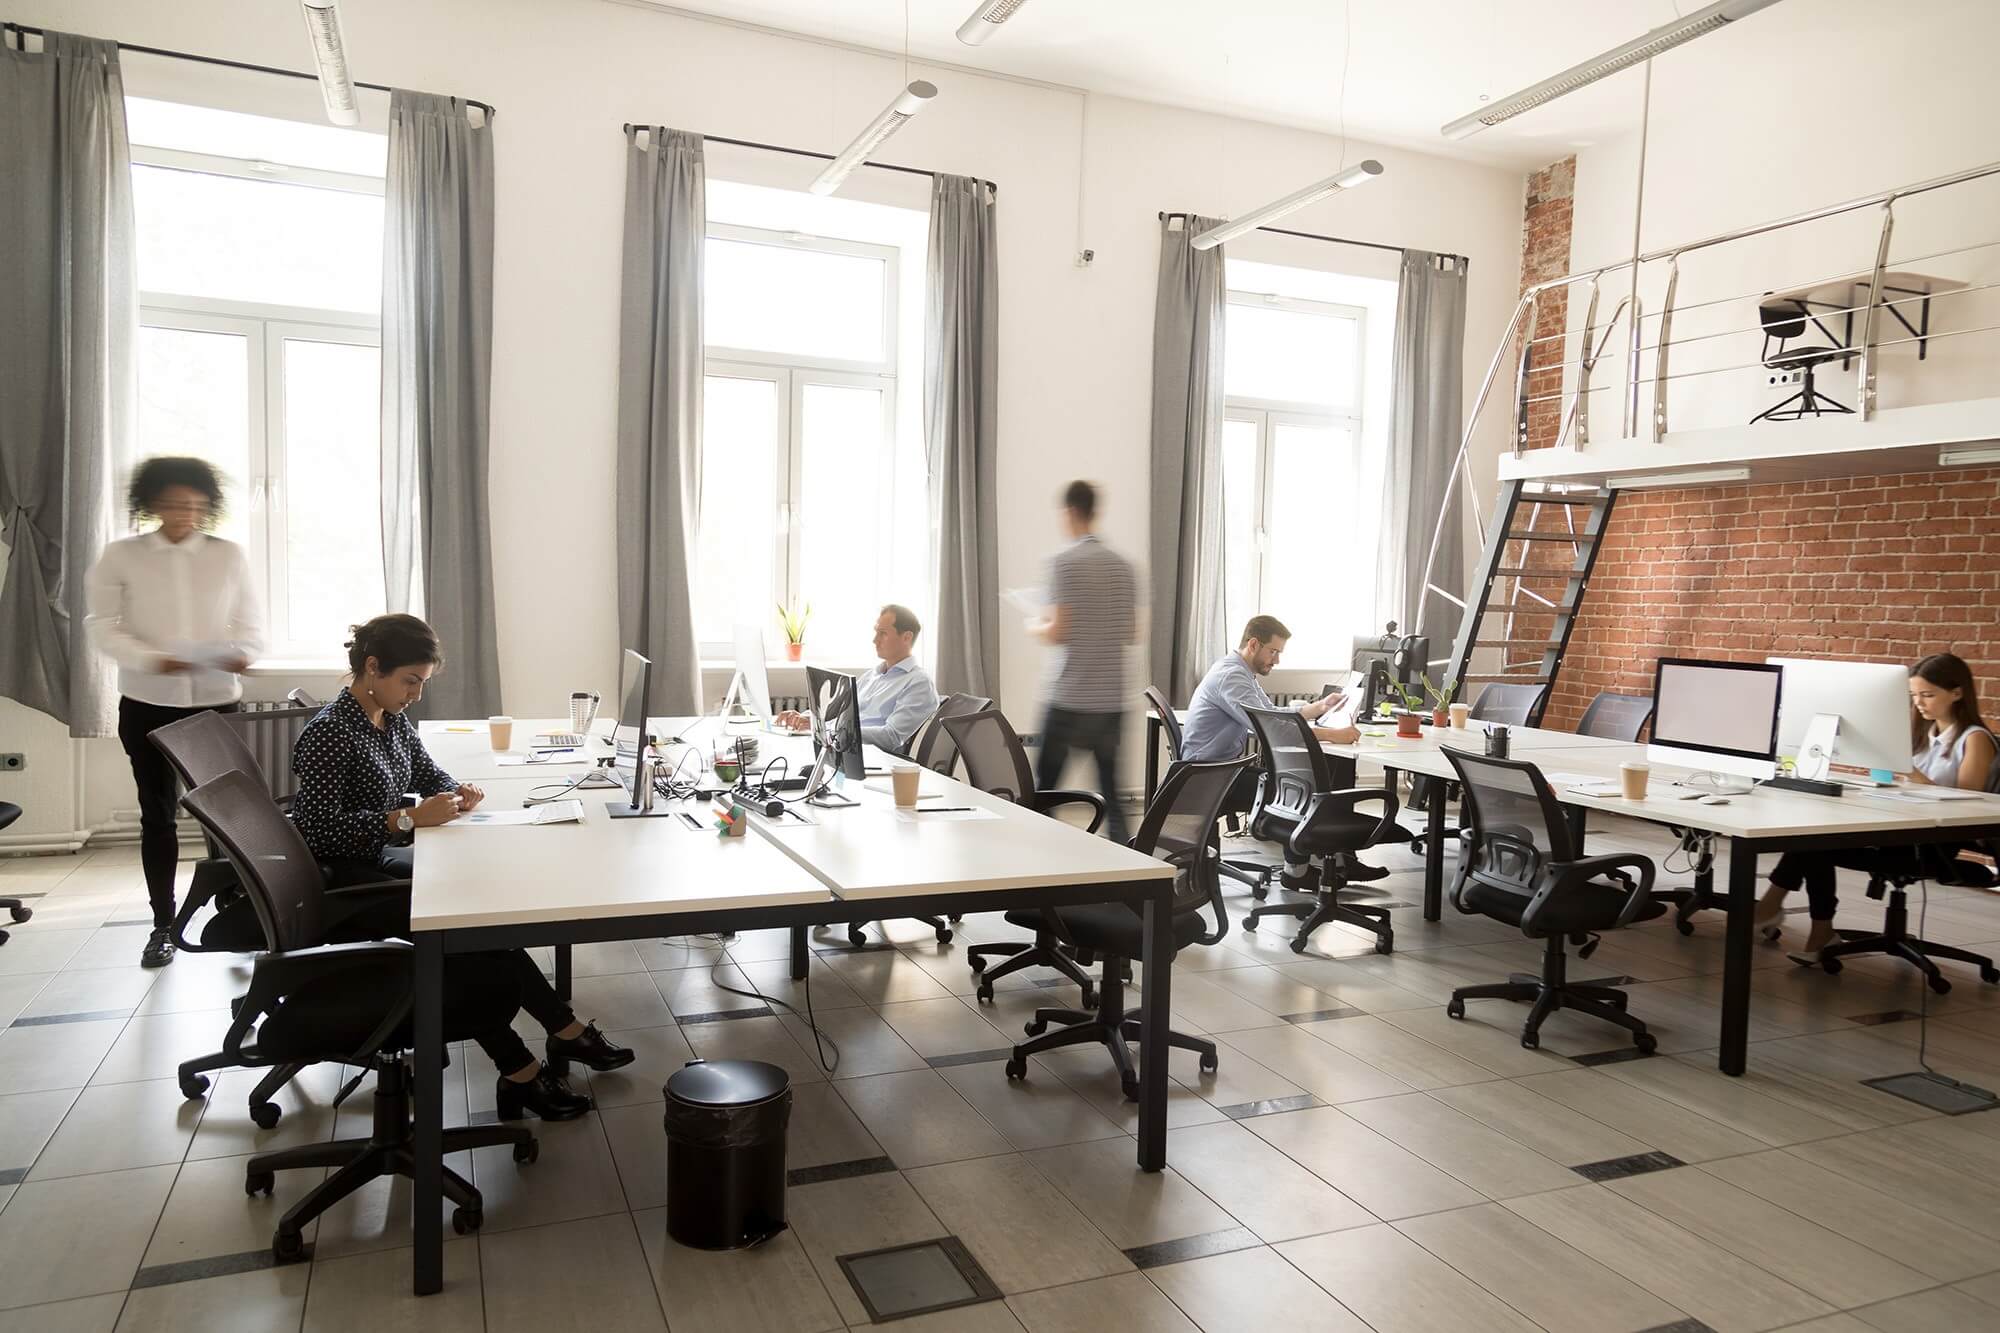 Tips for innovative modern office design